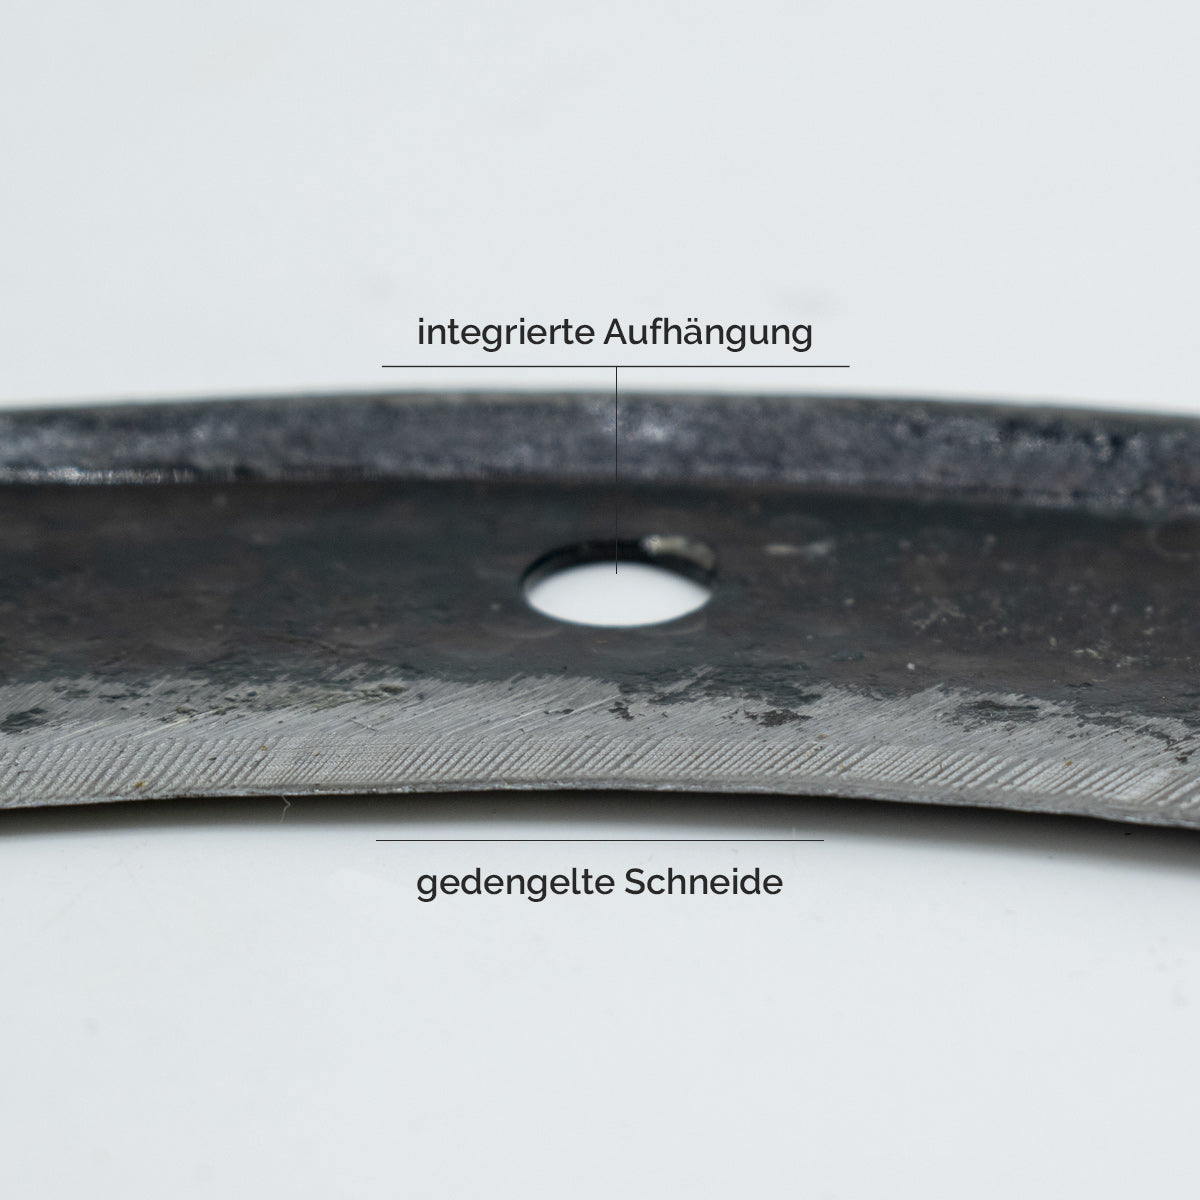 Blattsichel mähfertig gedengelt mit integrierter Aufhängung - inkl. gratis Schleifstein - mit Buchenholzstiel - Rechtshänder - Made in Austria